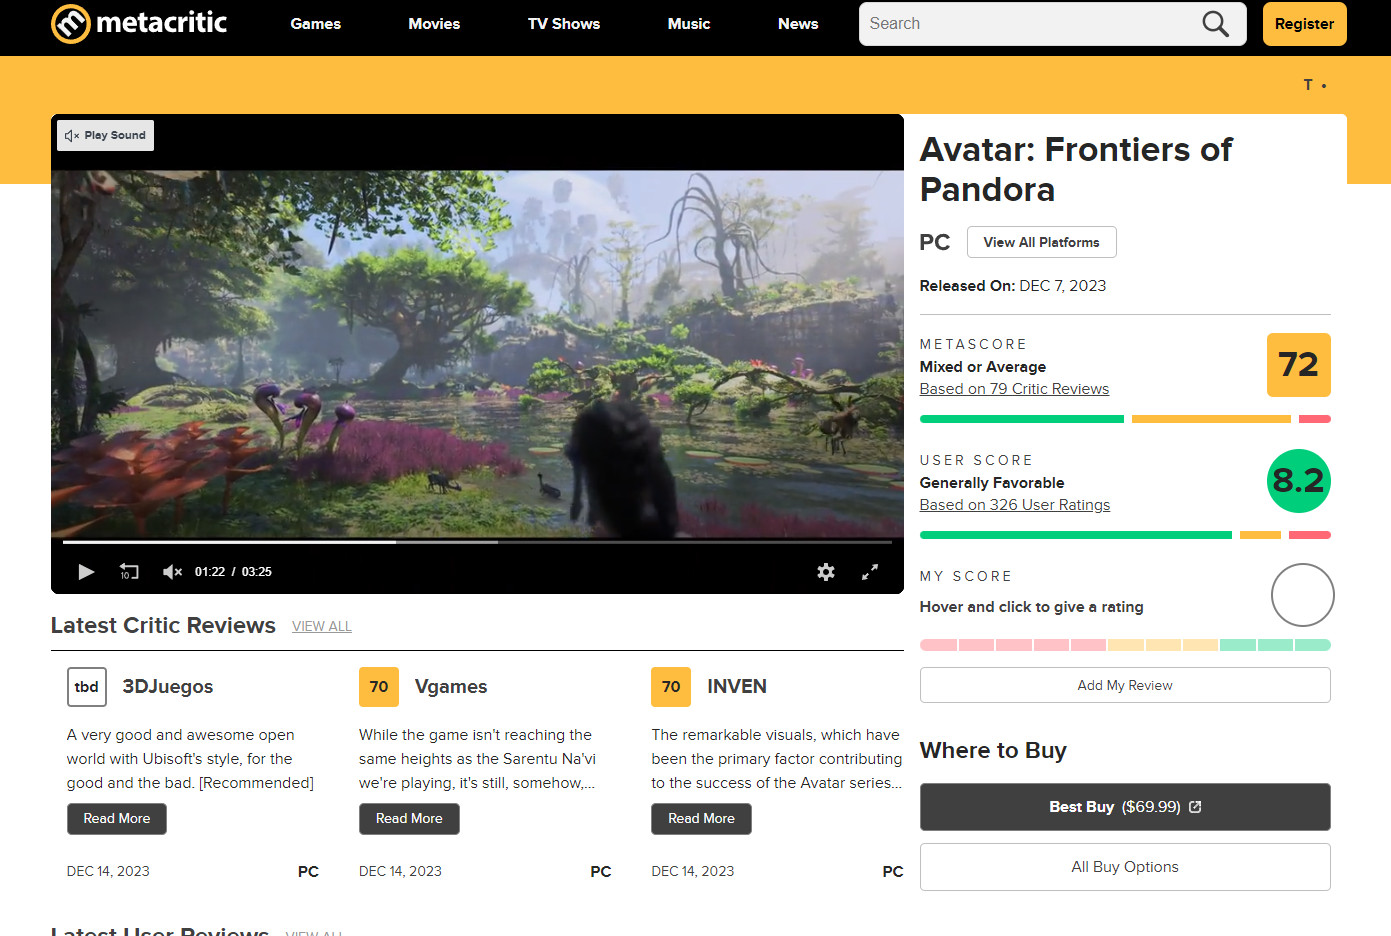 《阿凡达：潘多拉领土》成育碧近些年玩家风评最佳的一作